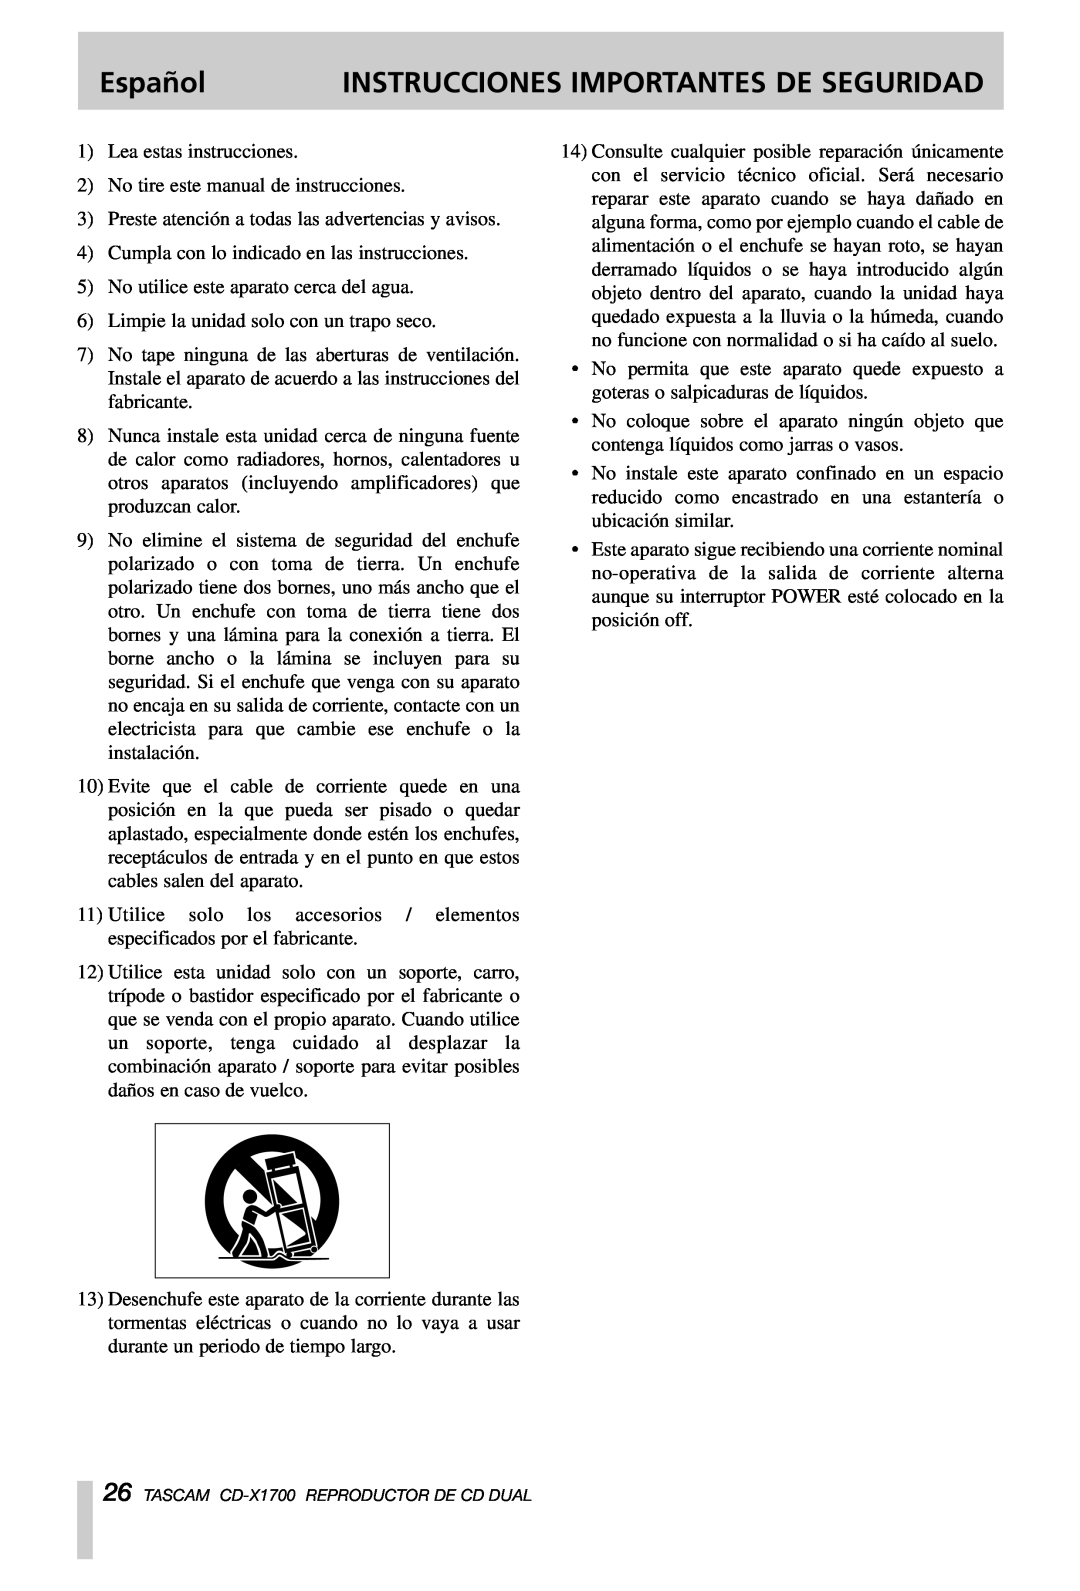 Tascam CD-X1700 owner manual Español, Instrucciones Importantes De Seguridad 